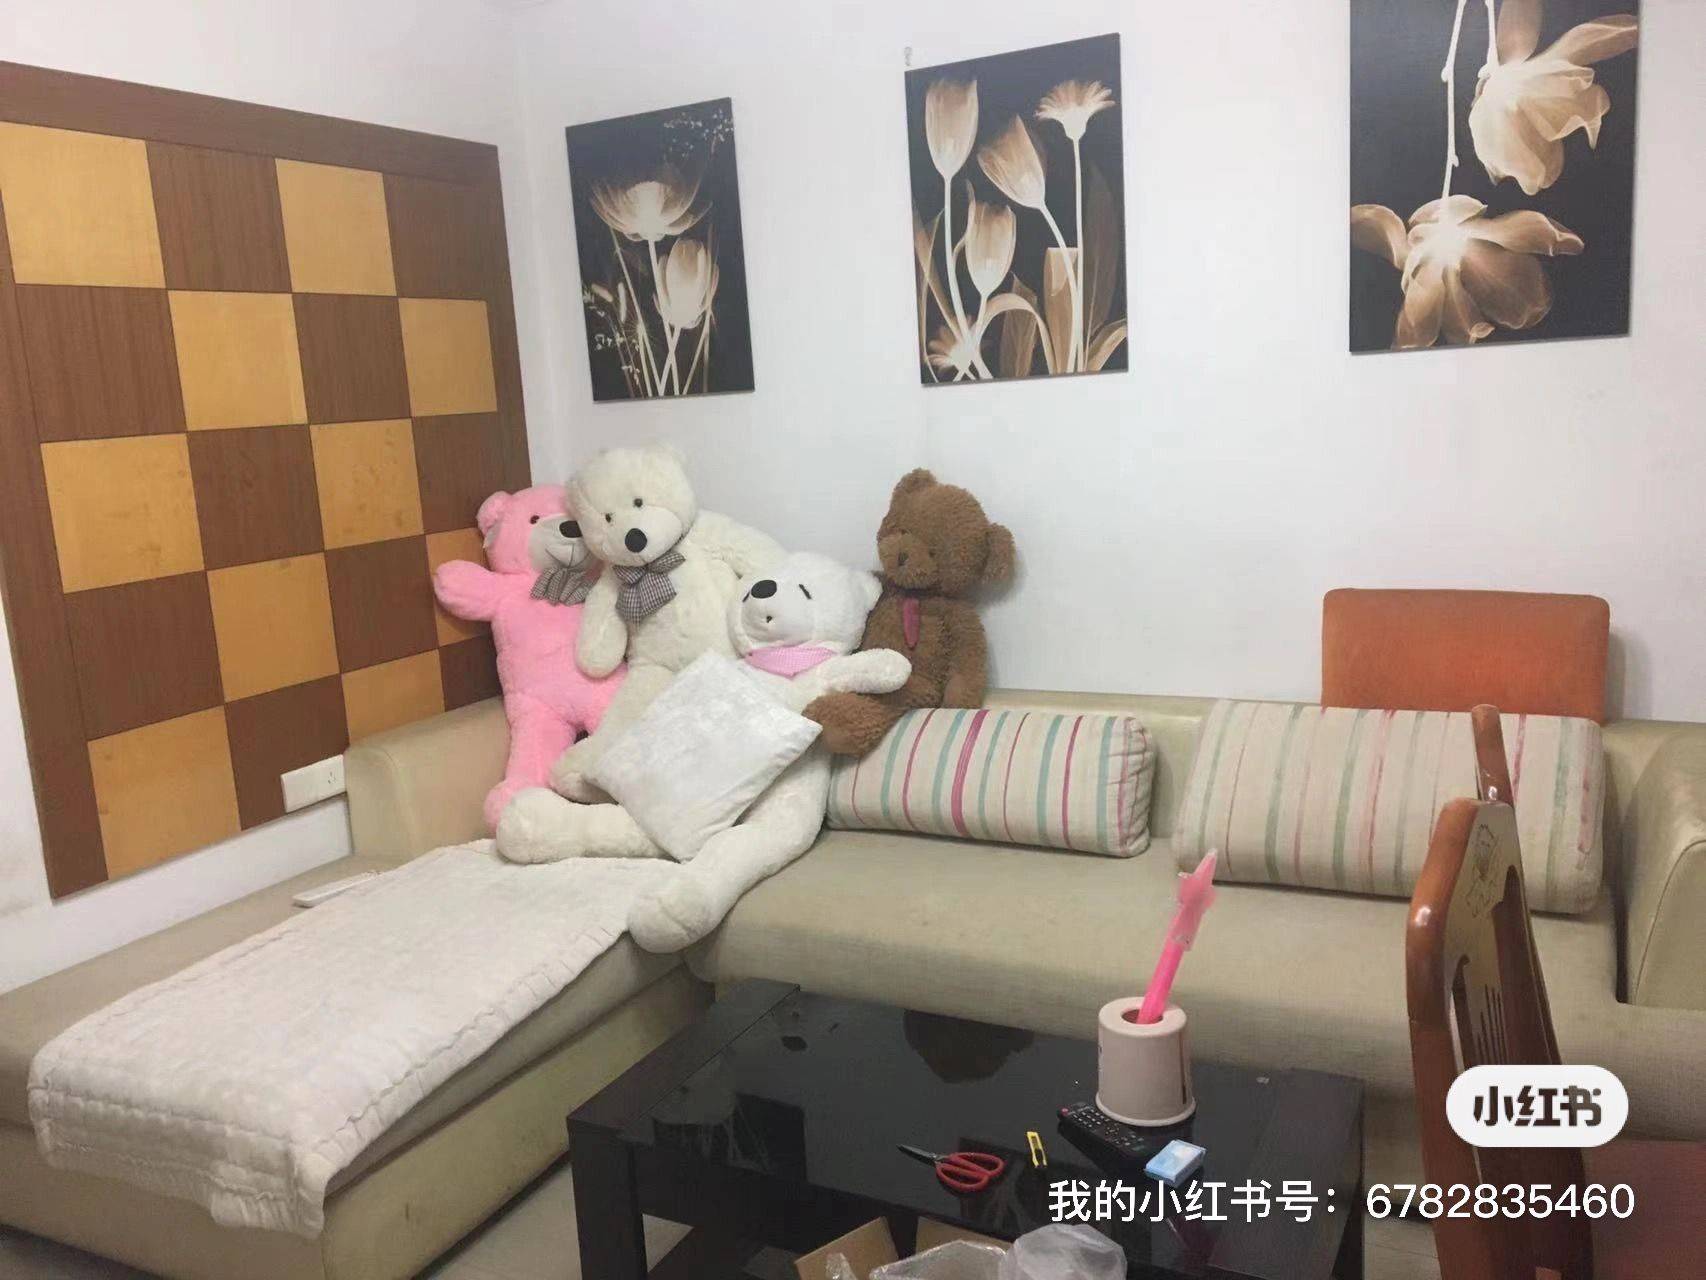 Nanjing-Jiangning-Cozy Home,Clean&Comfy